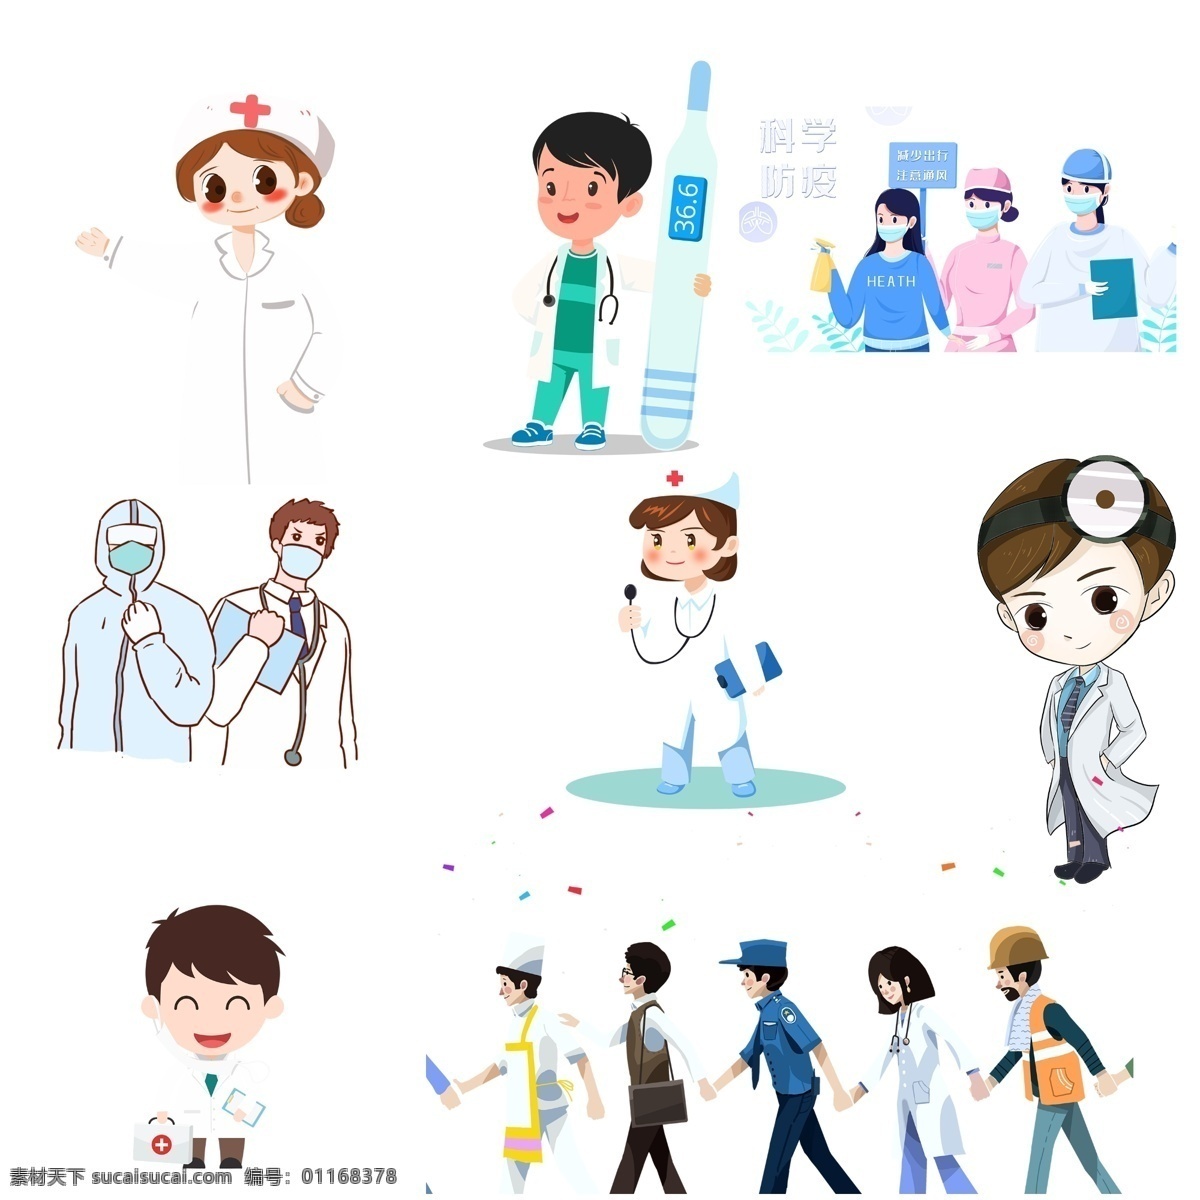 医生漫画 卡通医生 卡通护士 医护人员 抗病毒人员 卡通人物 白衣天使 医院人 护士医生 漫画医生 医院 工作人员 医疗人员 治疗 看病的人 行业人员 白大褂 白大夫 分层 人物